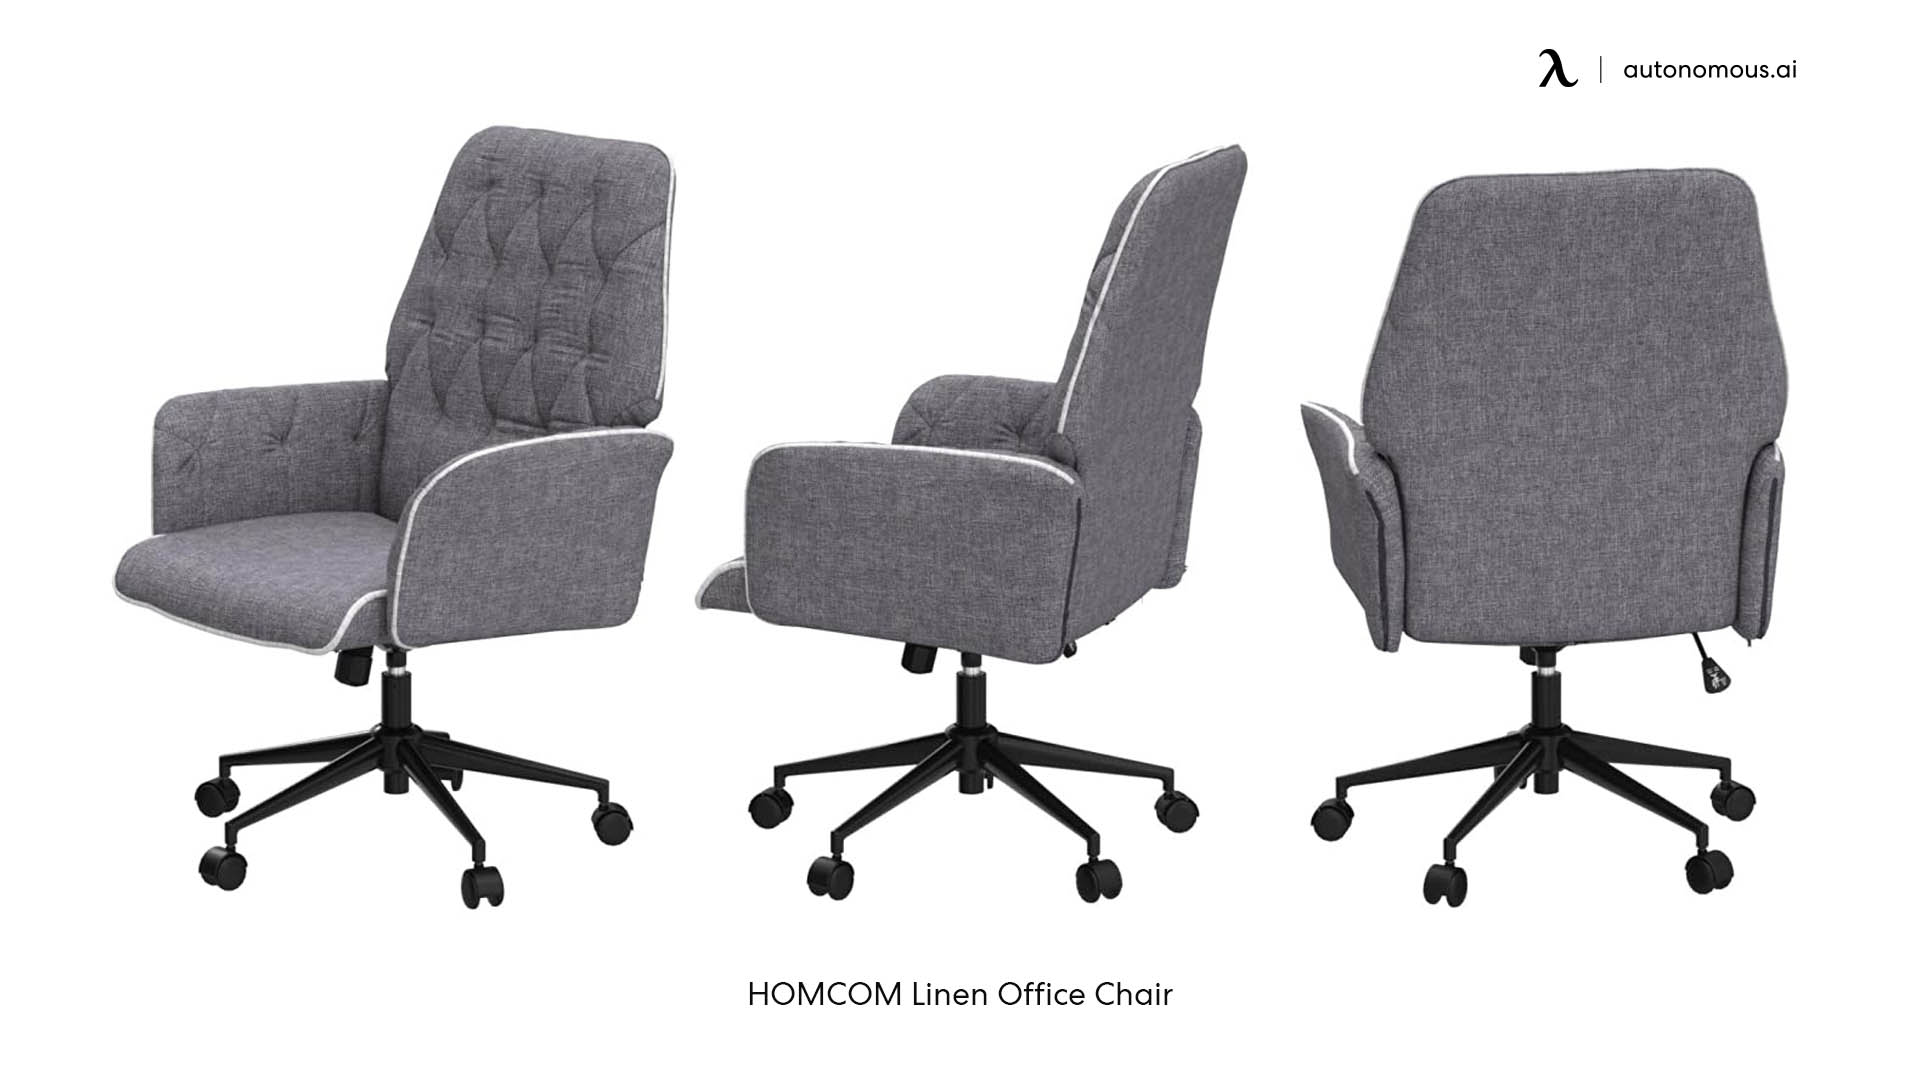 HOMCOM Linen Office Chair